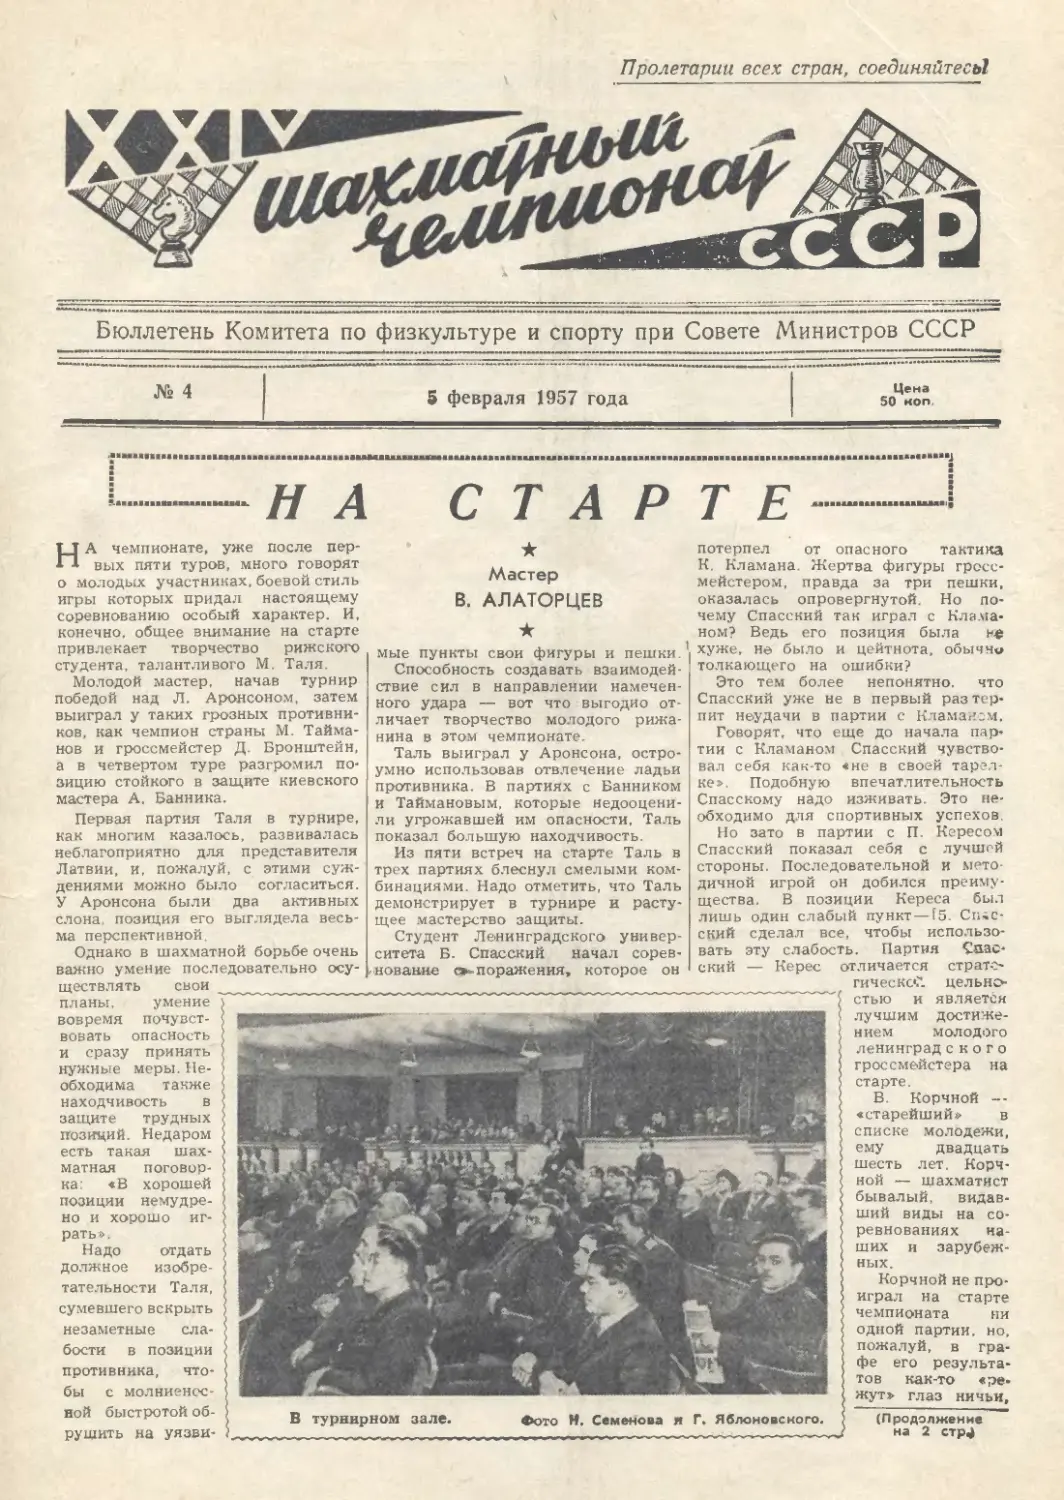 № 4 - 5 февраля 1957 г.
В.Алаторцев - На старте